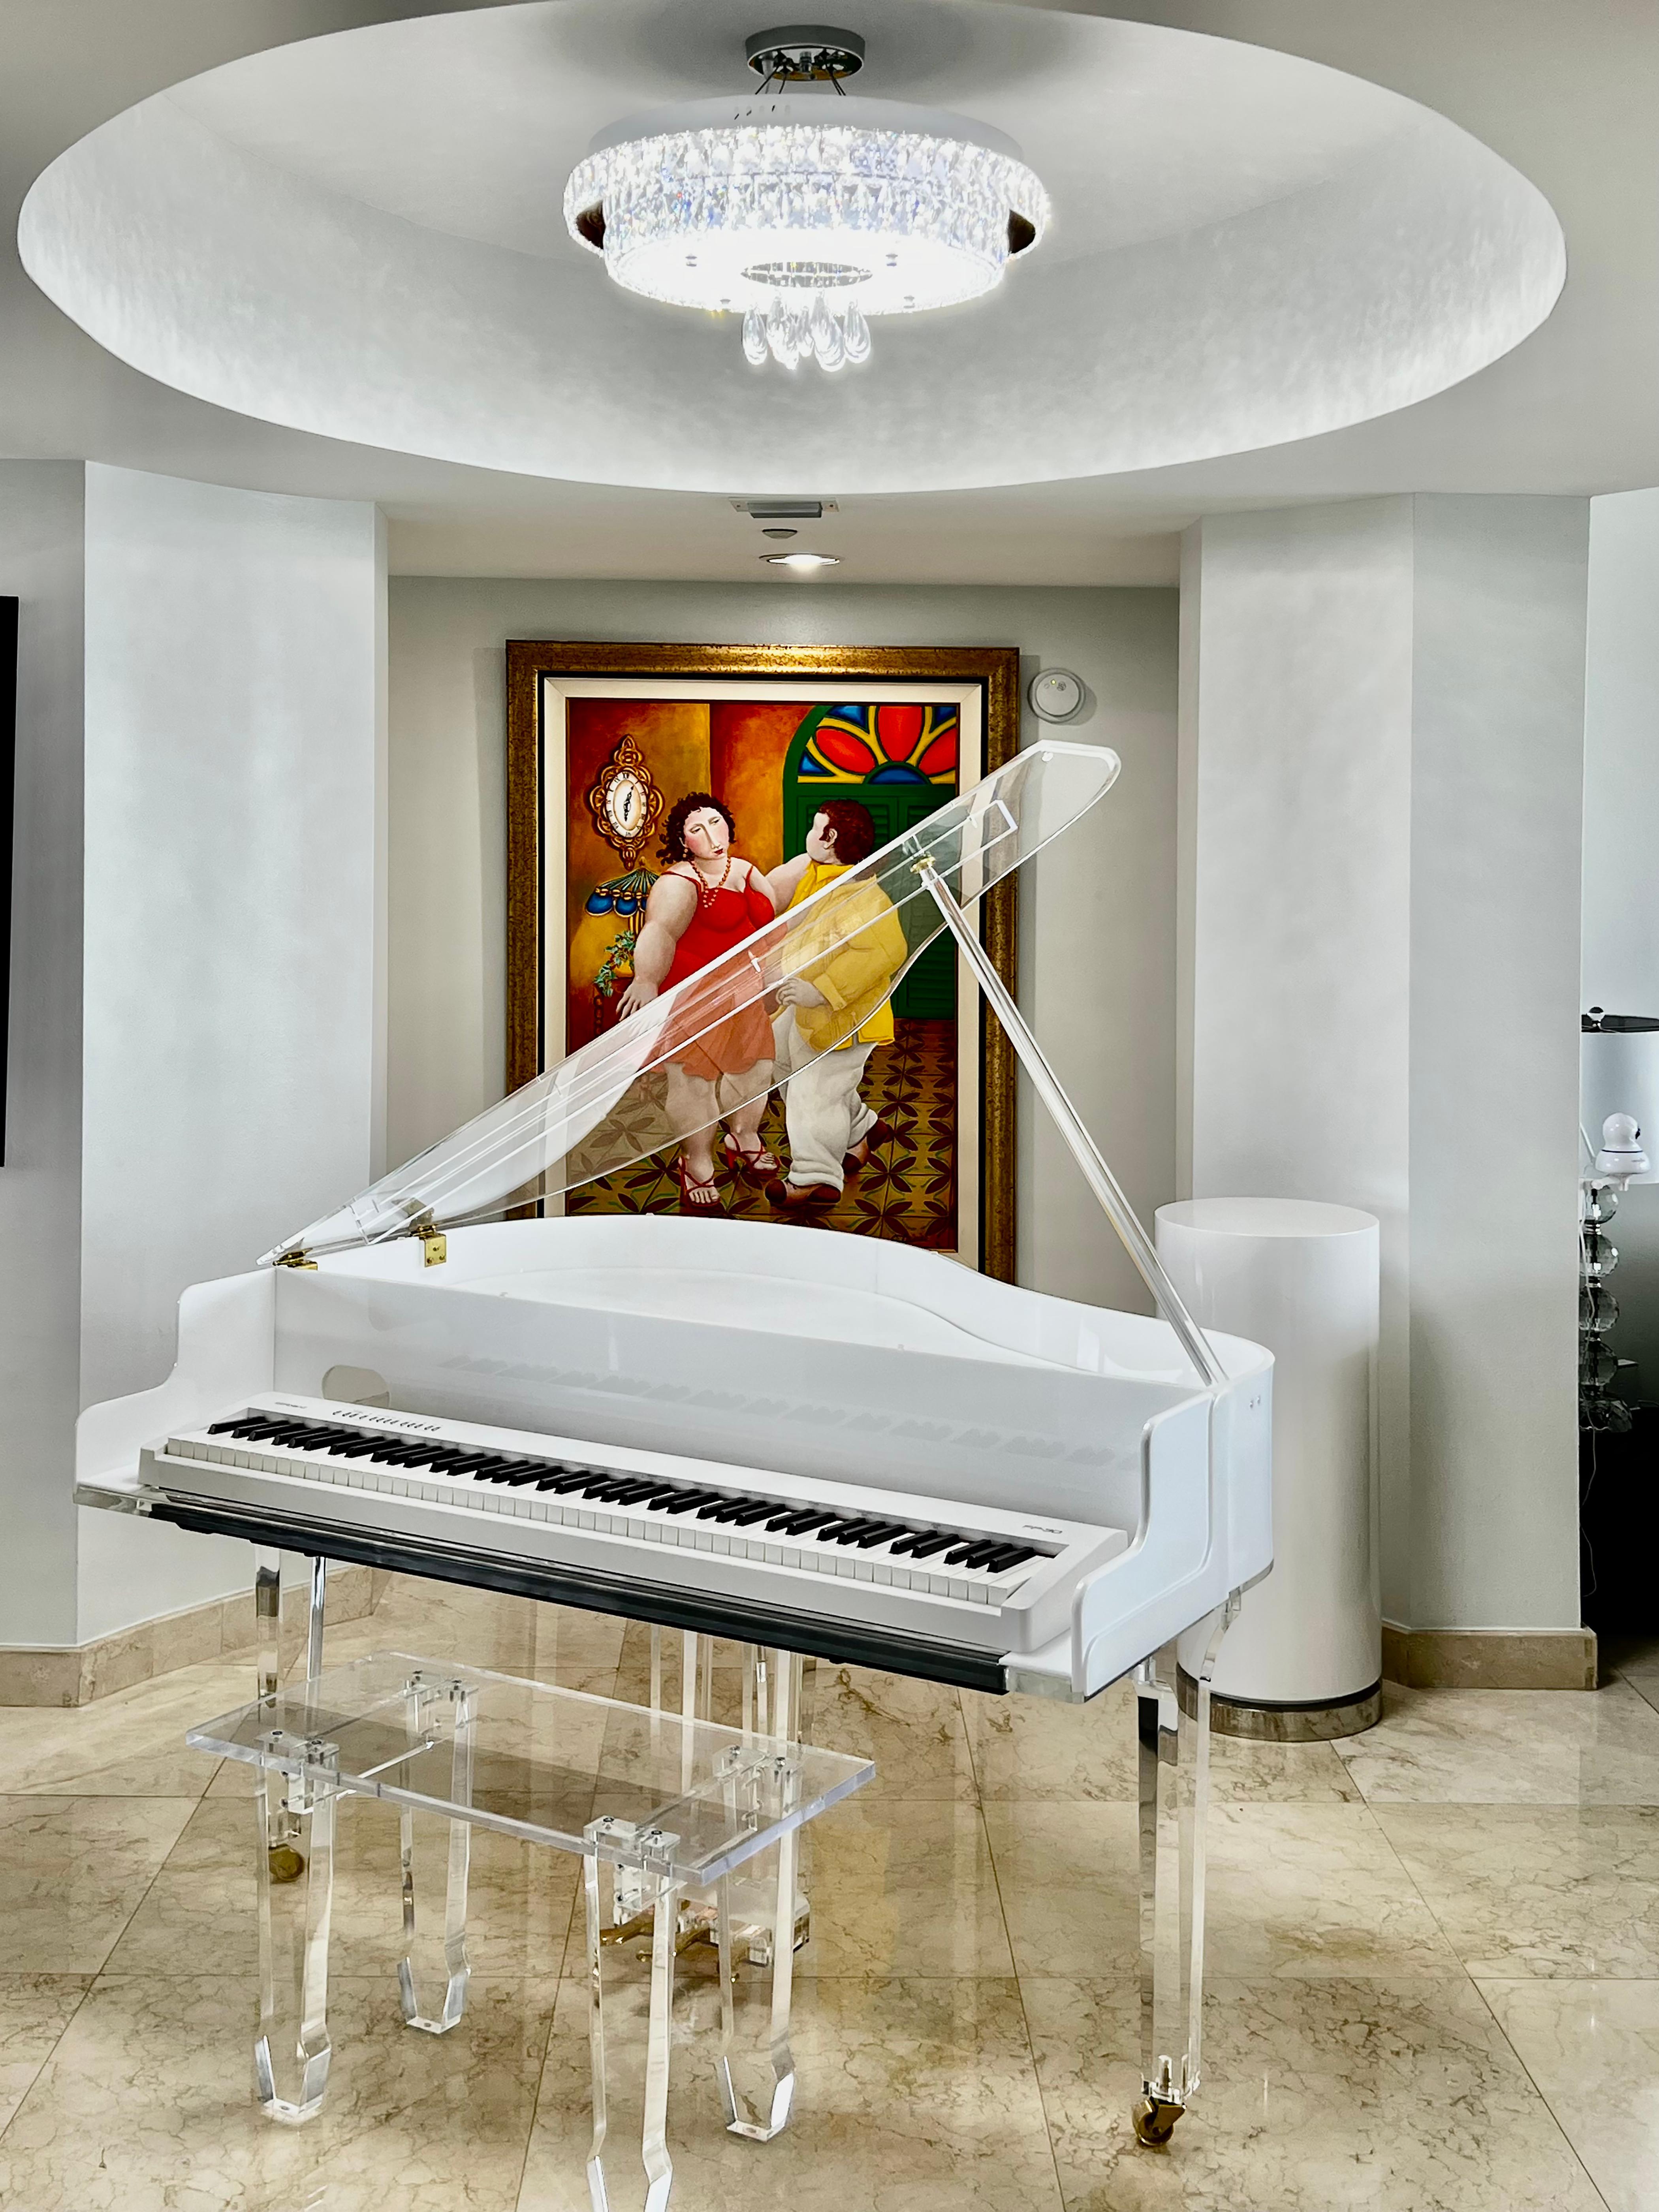 maßgefertigtes Lucite-Acryl-Baby Klavier und Bank von Iconic Design Gallery

Zum Verkauf angeboten wird ein neuer maßgefertigter Babyflügel aus Lucite und Acryl mit einer passenden Bank. Das Klavier ist mit dicken Lucite-Beinen auf Rollen und einer